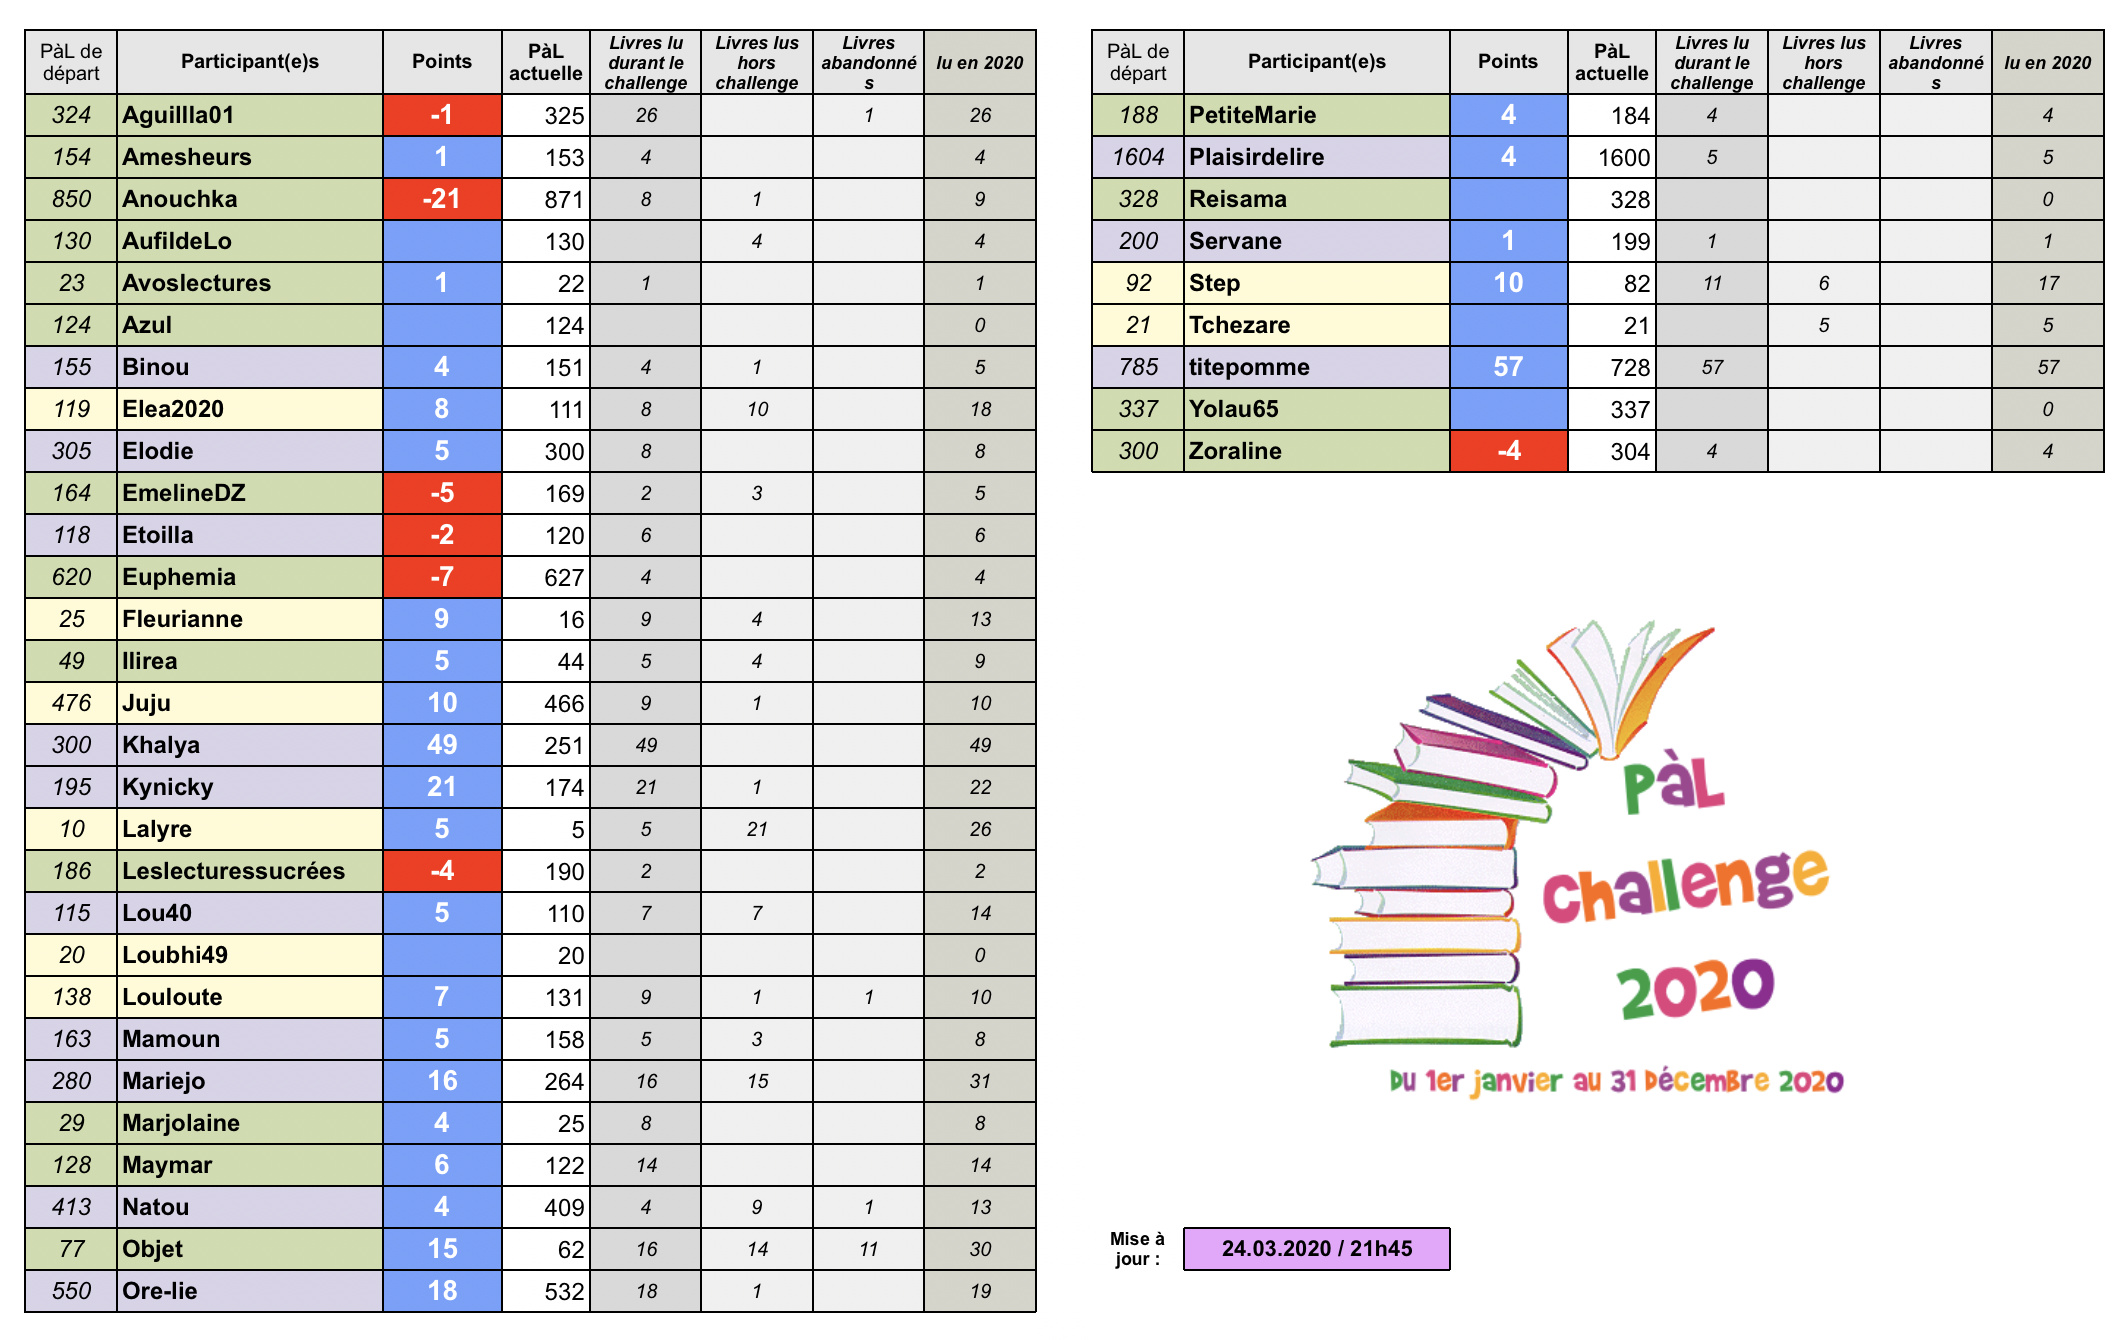 °°PàL Challenge 2020°° - Page 6 Captur23